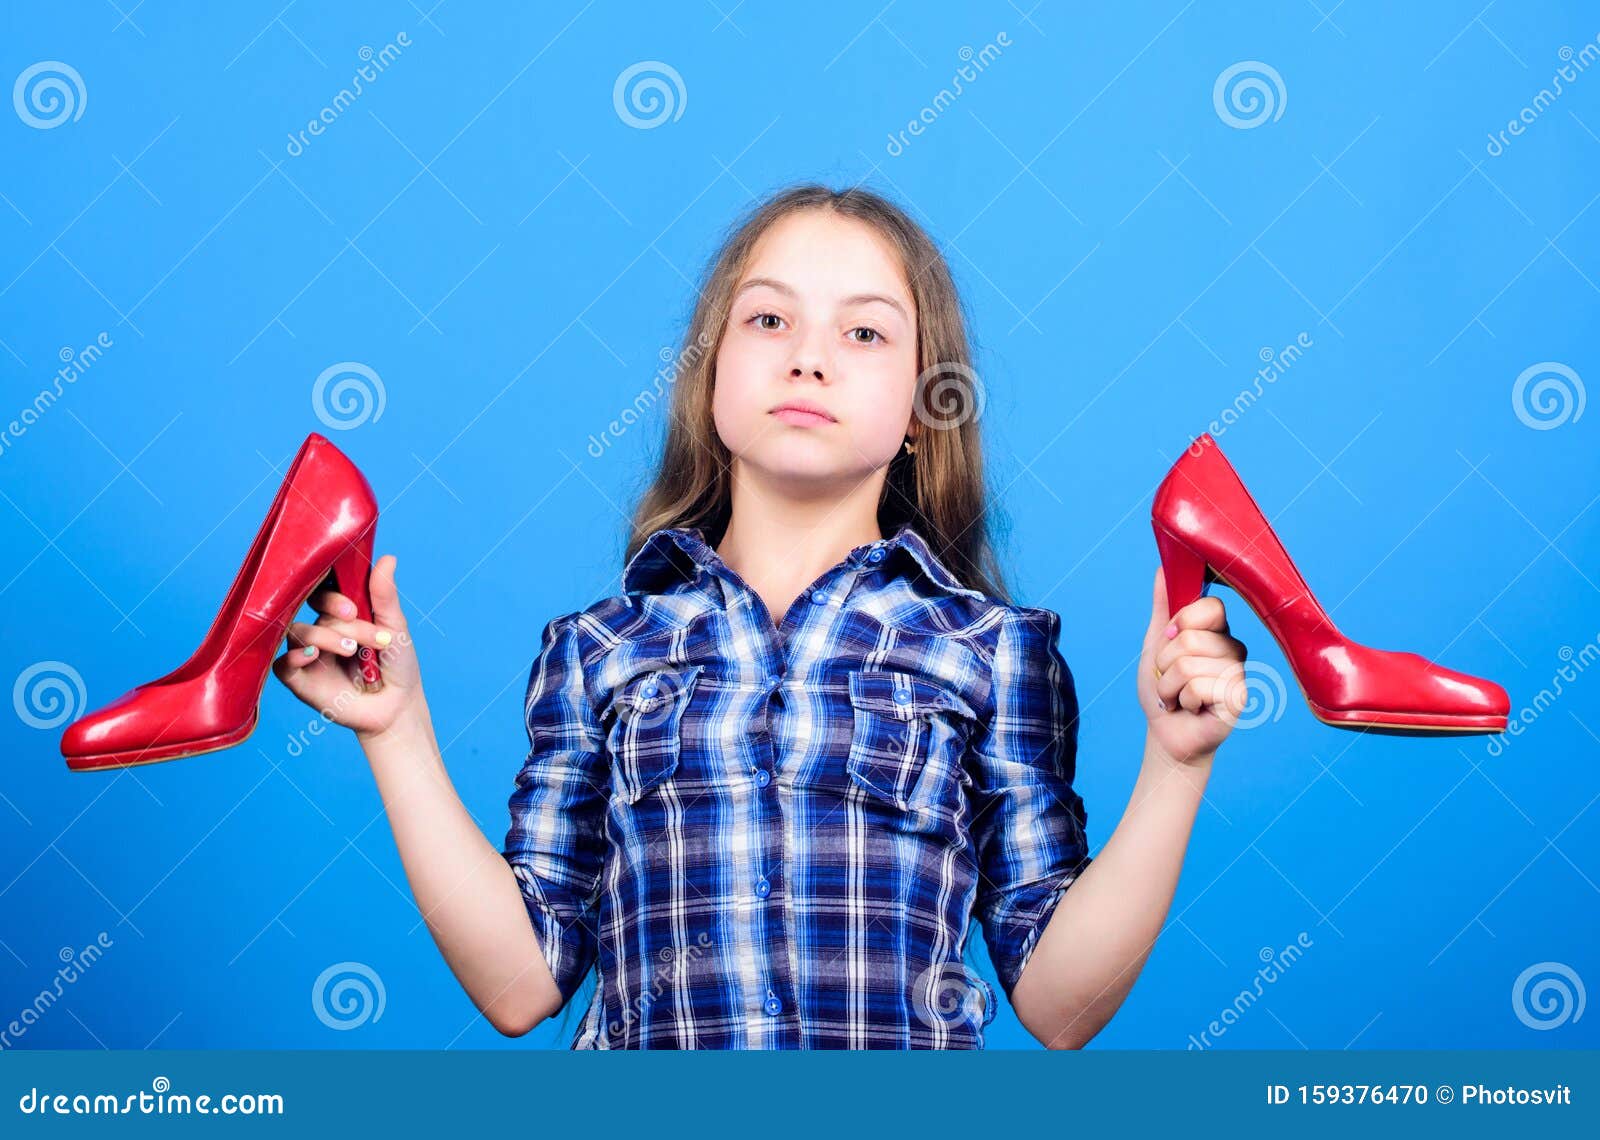 Women Spring Ankle Strap High Heels Casual Mary Janes Princess Shoes | Wish  | Saltos pretos, Sapatos de grife, Sapatos pretos